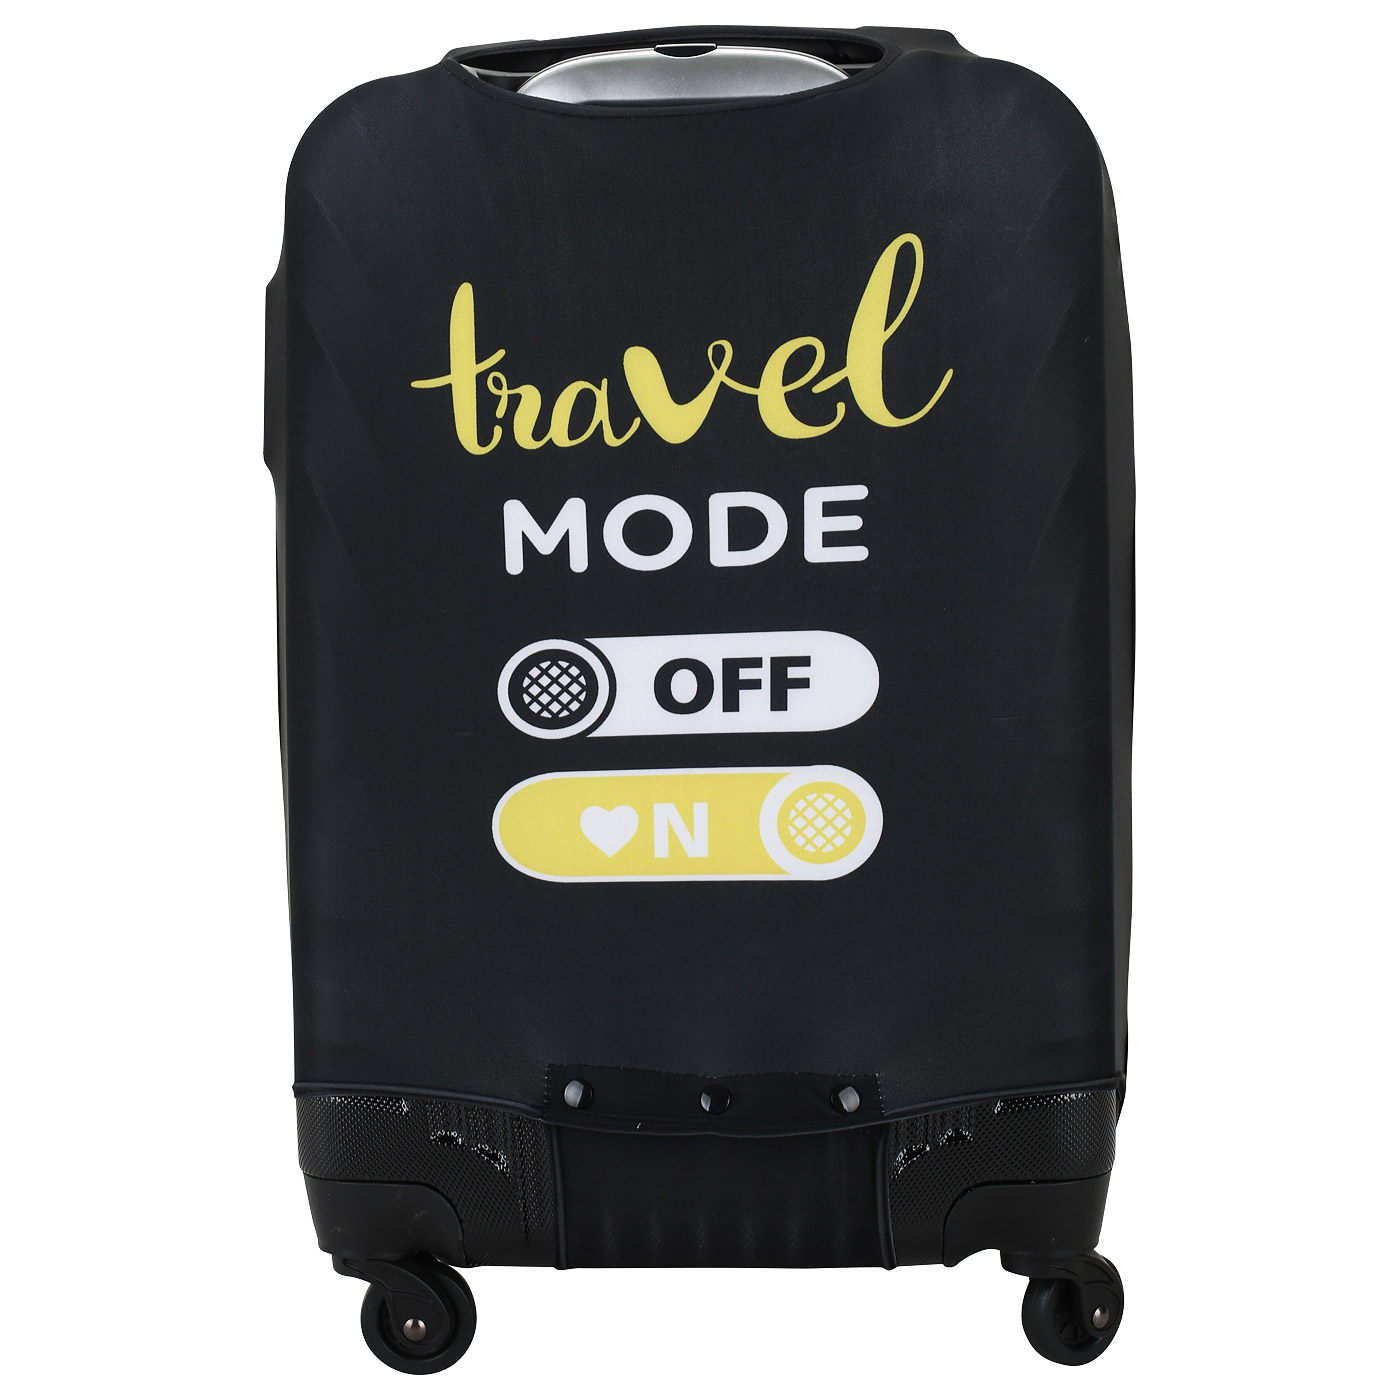 Чехол черного цвета для маленького чемодана Eberhart Travel Mode On Off